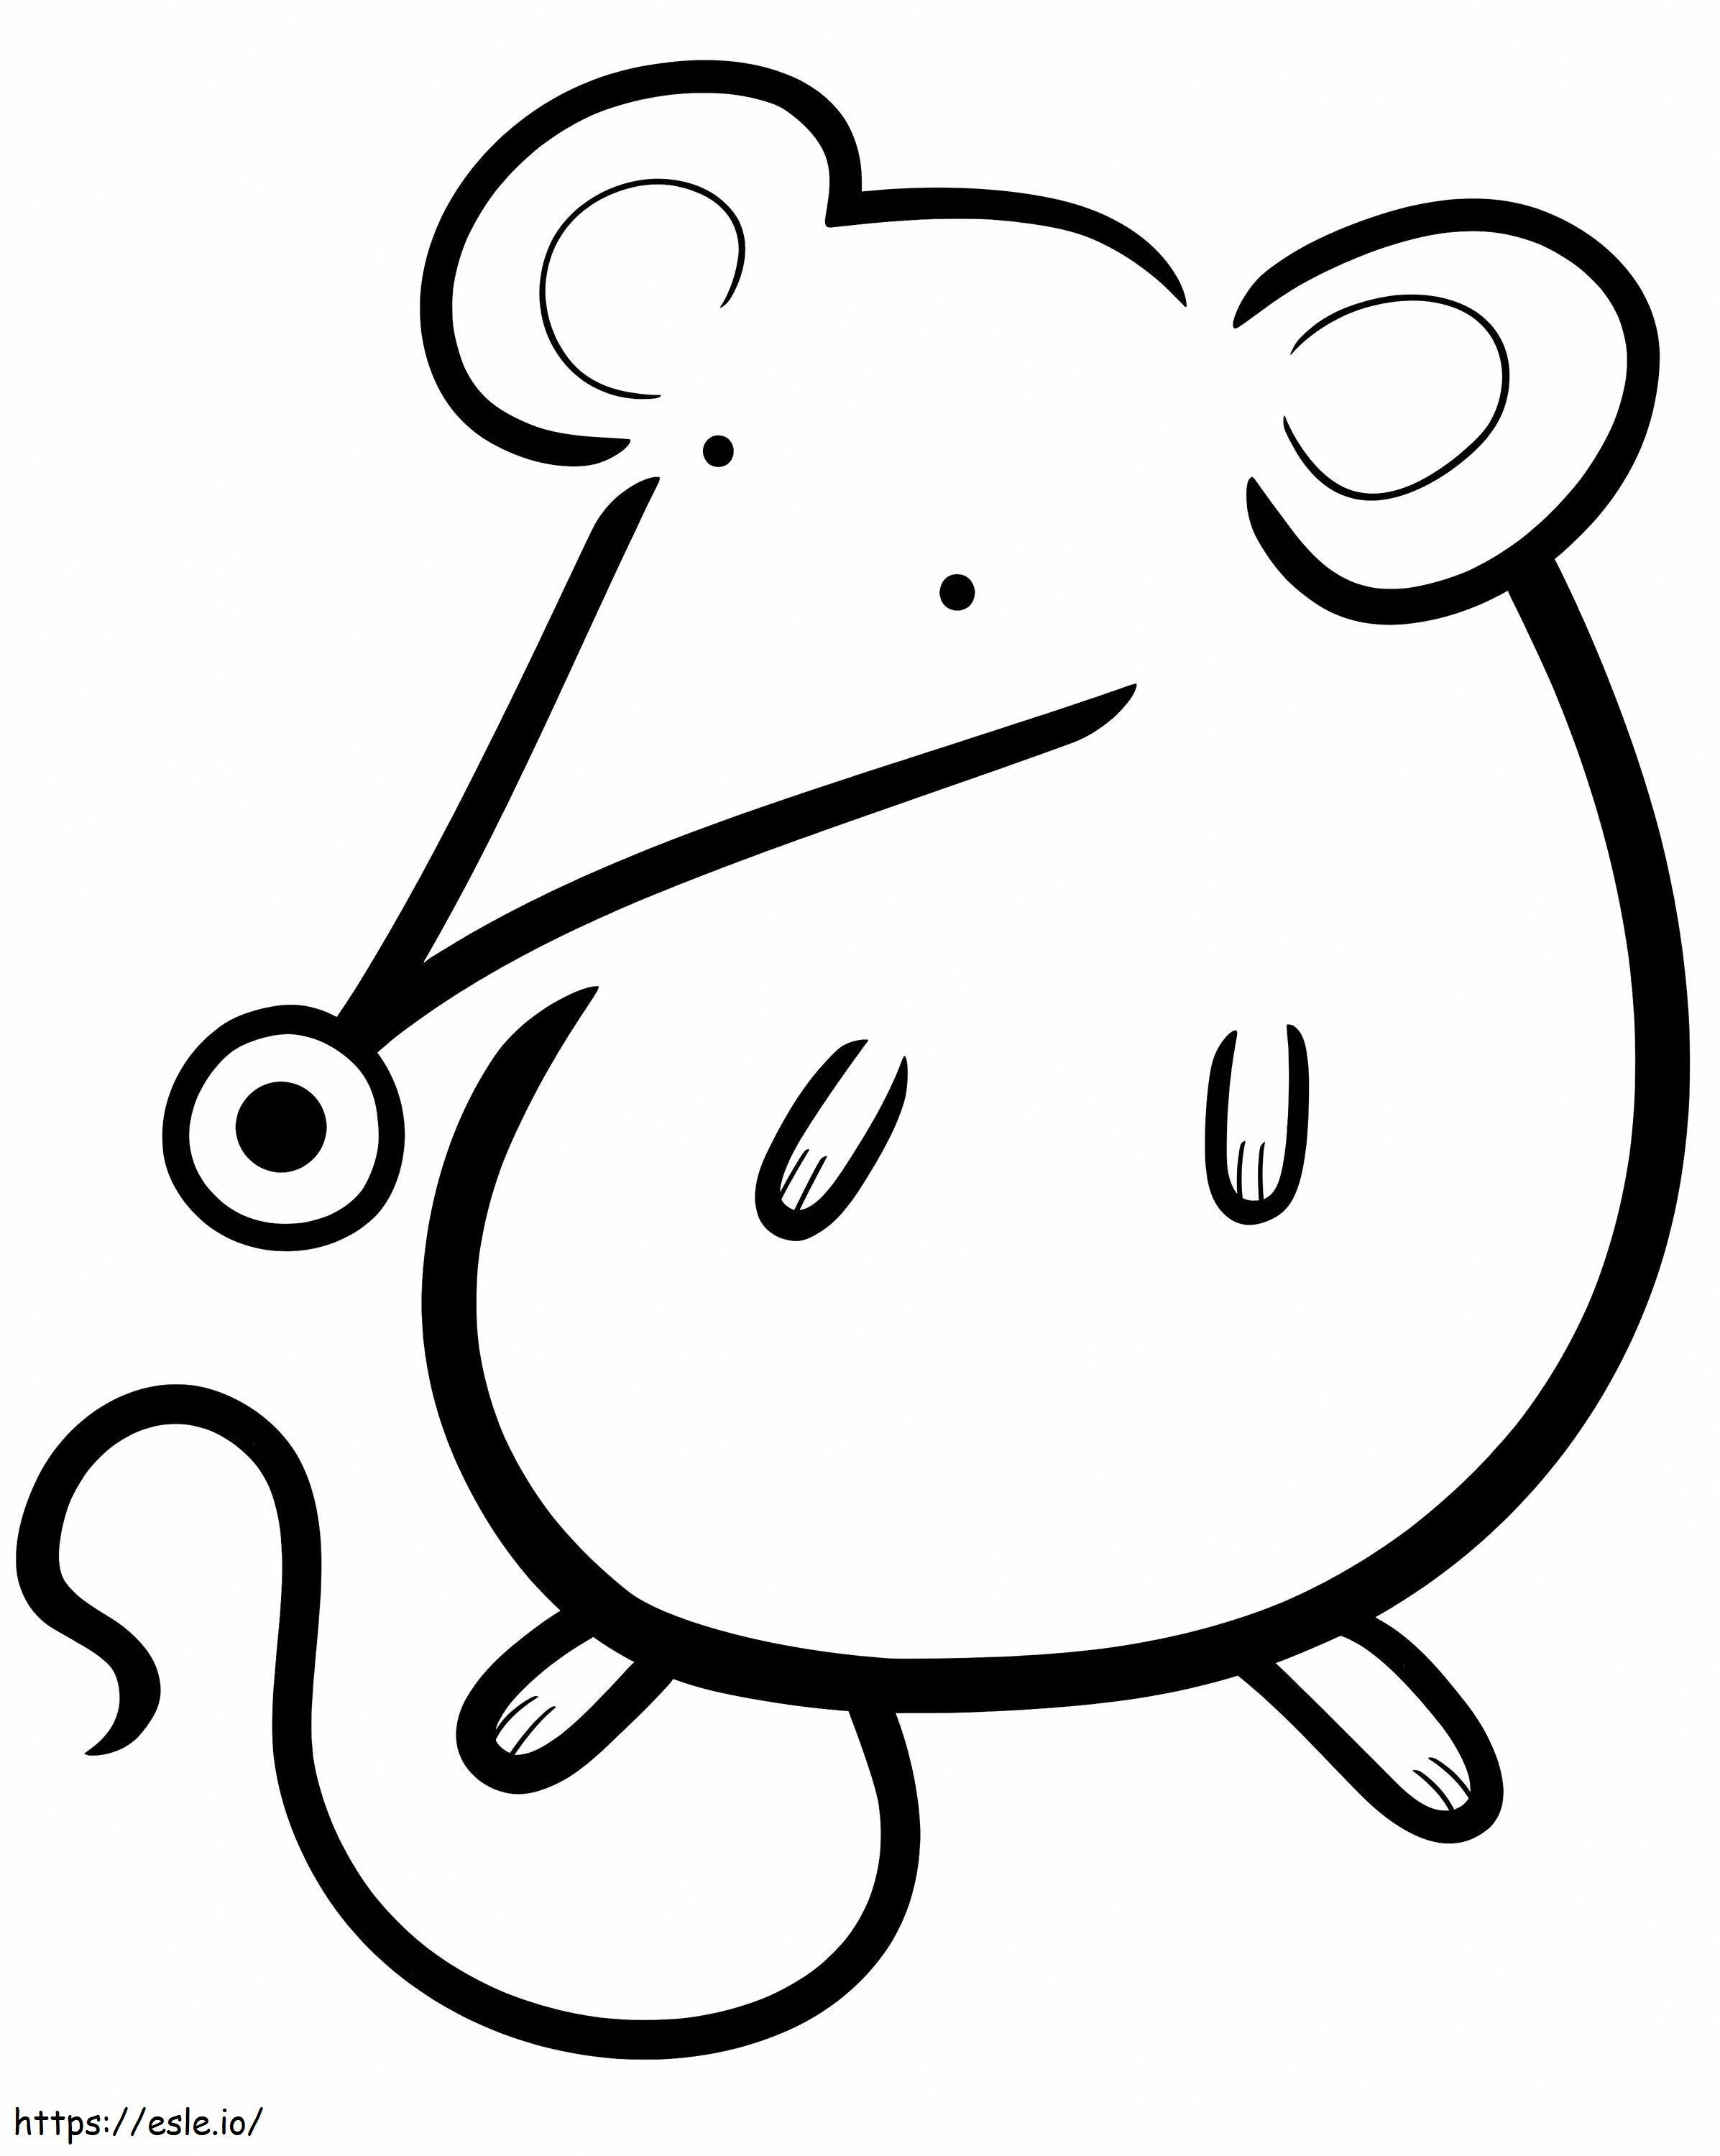 Niedlicher Maus-Cartoon für Malbuch-Vektor 943082 ausmalbilder